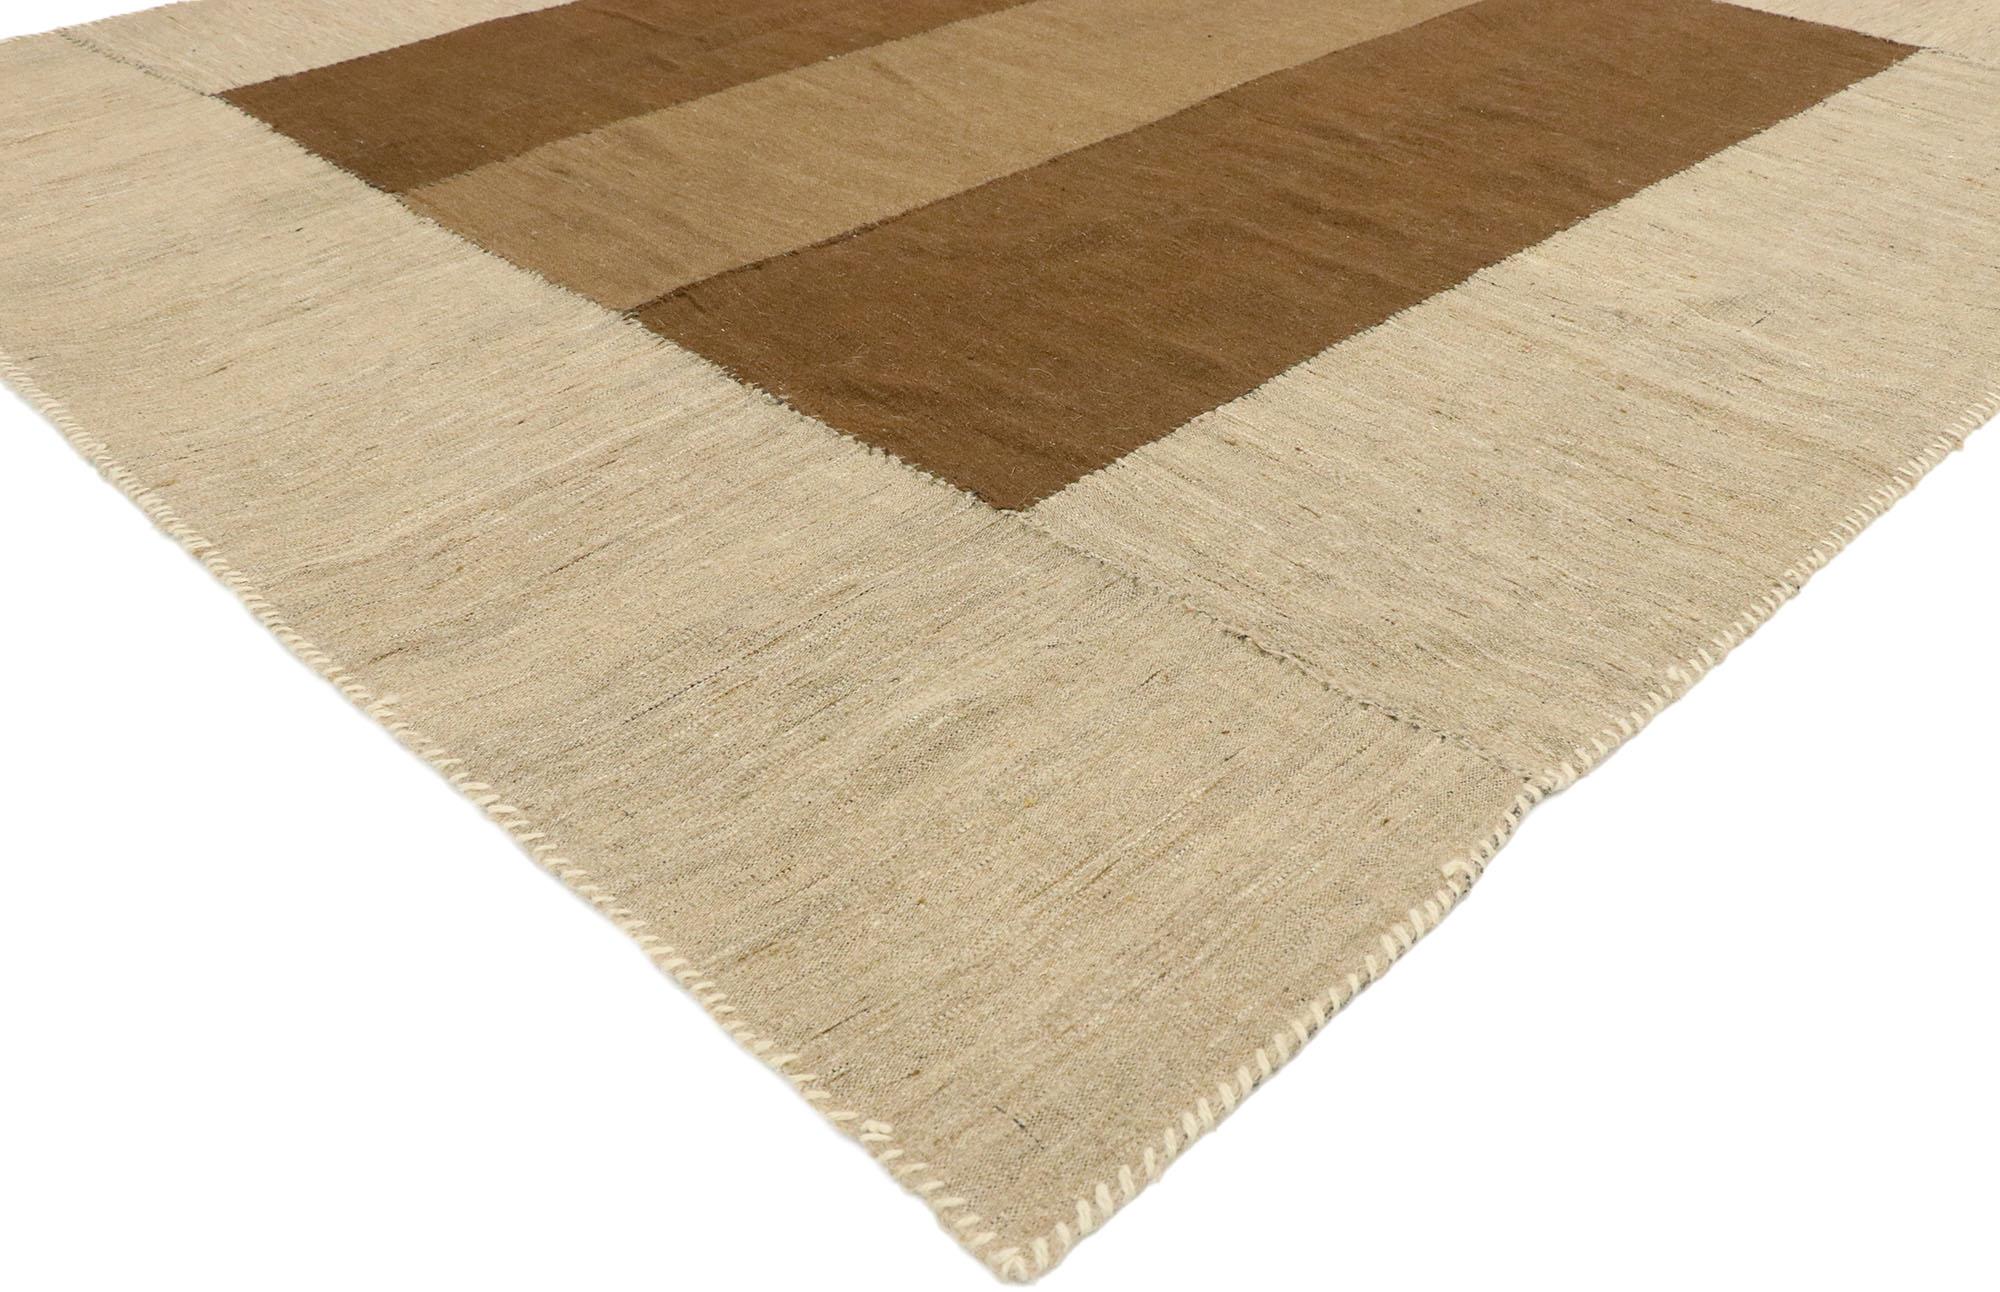 76386, alter persischer Kilim-Teppich im Mid-Century Modern-Stil, flachgewebter Kilim-Teppich. Dieser handgewebte persische Kilim-Teppich im Vintage-Stil aus Wolle, der ein klassisches Streifendesign mit erdfarbenen Tönen und dem Stil der